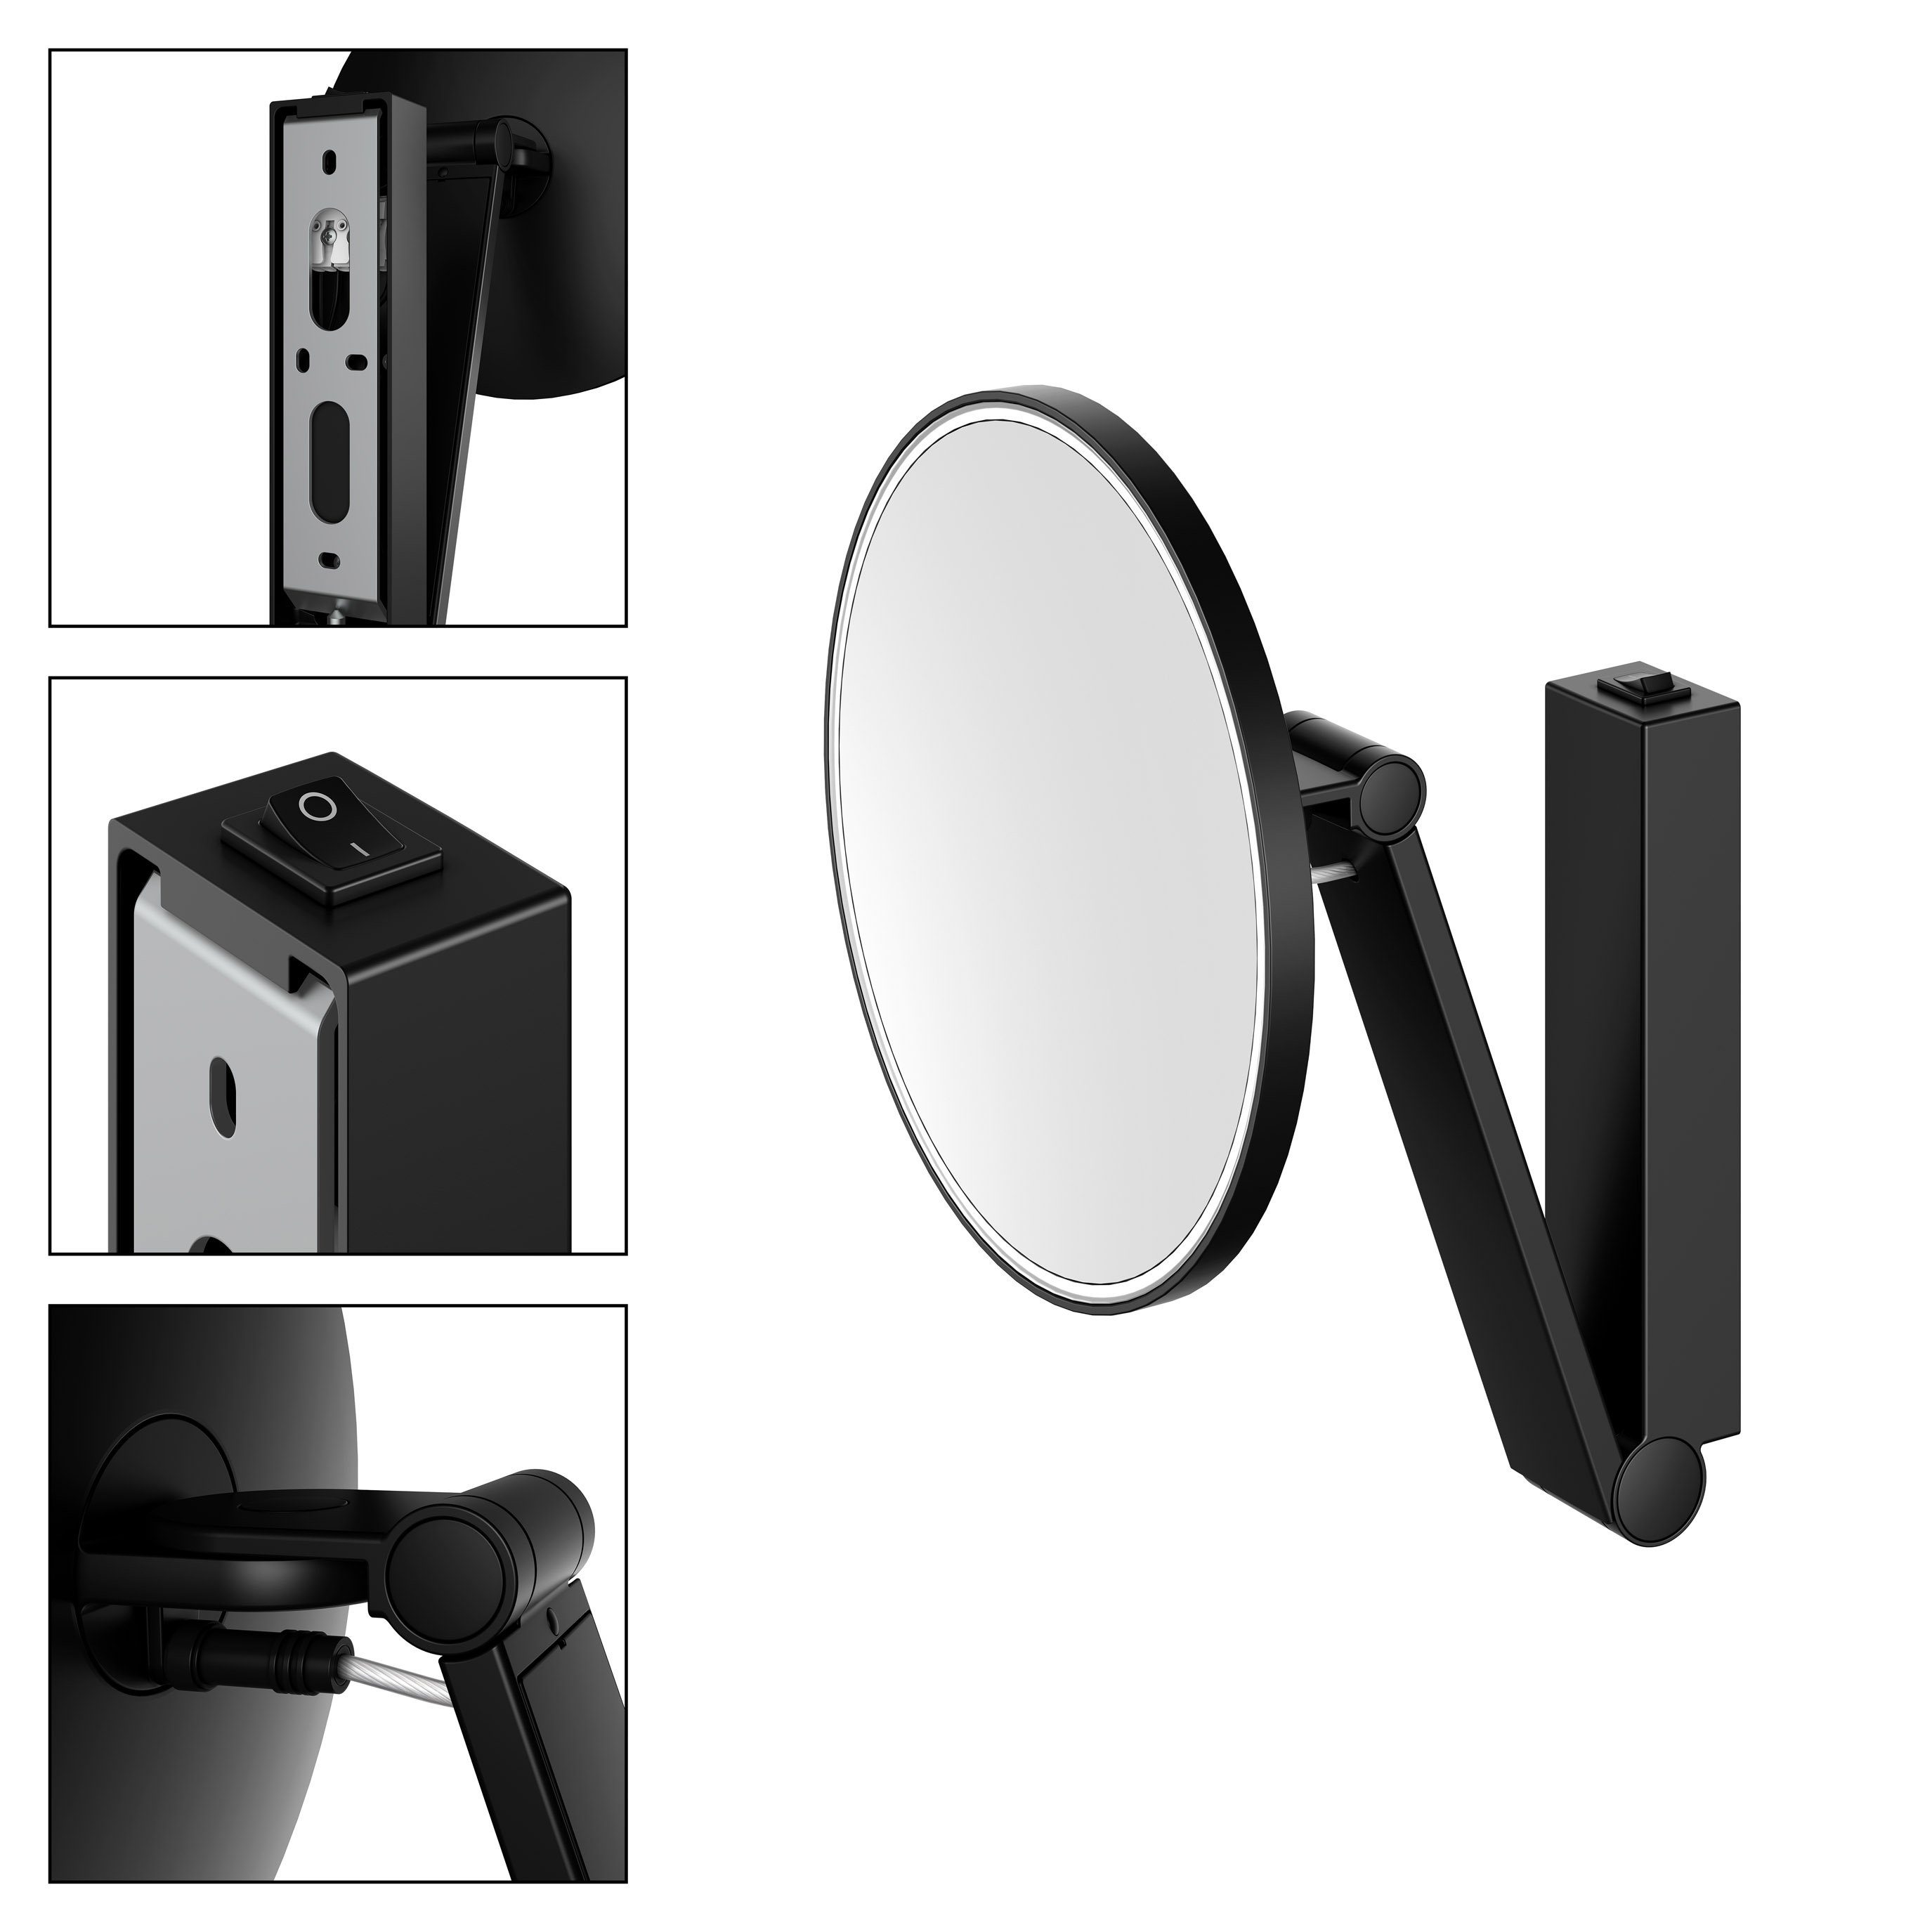 Keuco Spiegel, Kosmetikspiegel, 5-fach LED-Beleuchtung, Vergrößerung, rund, schwarz